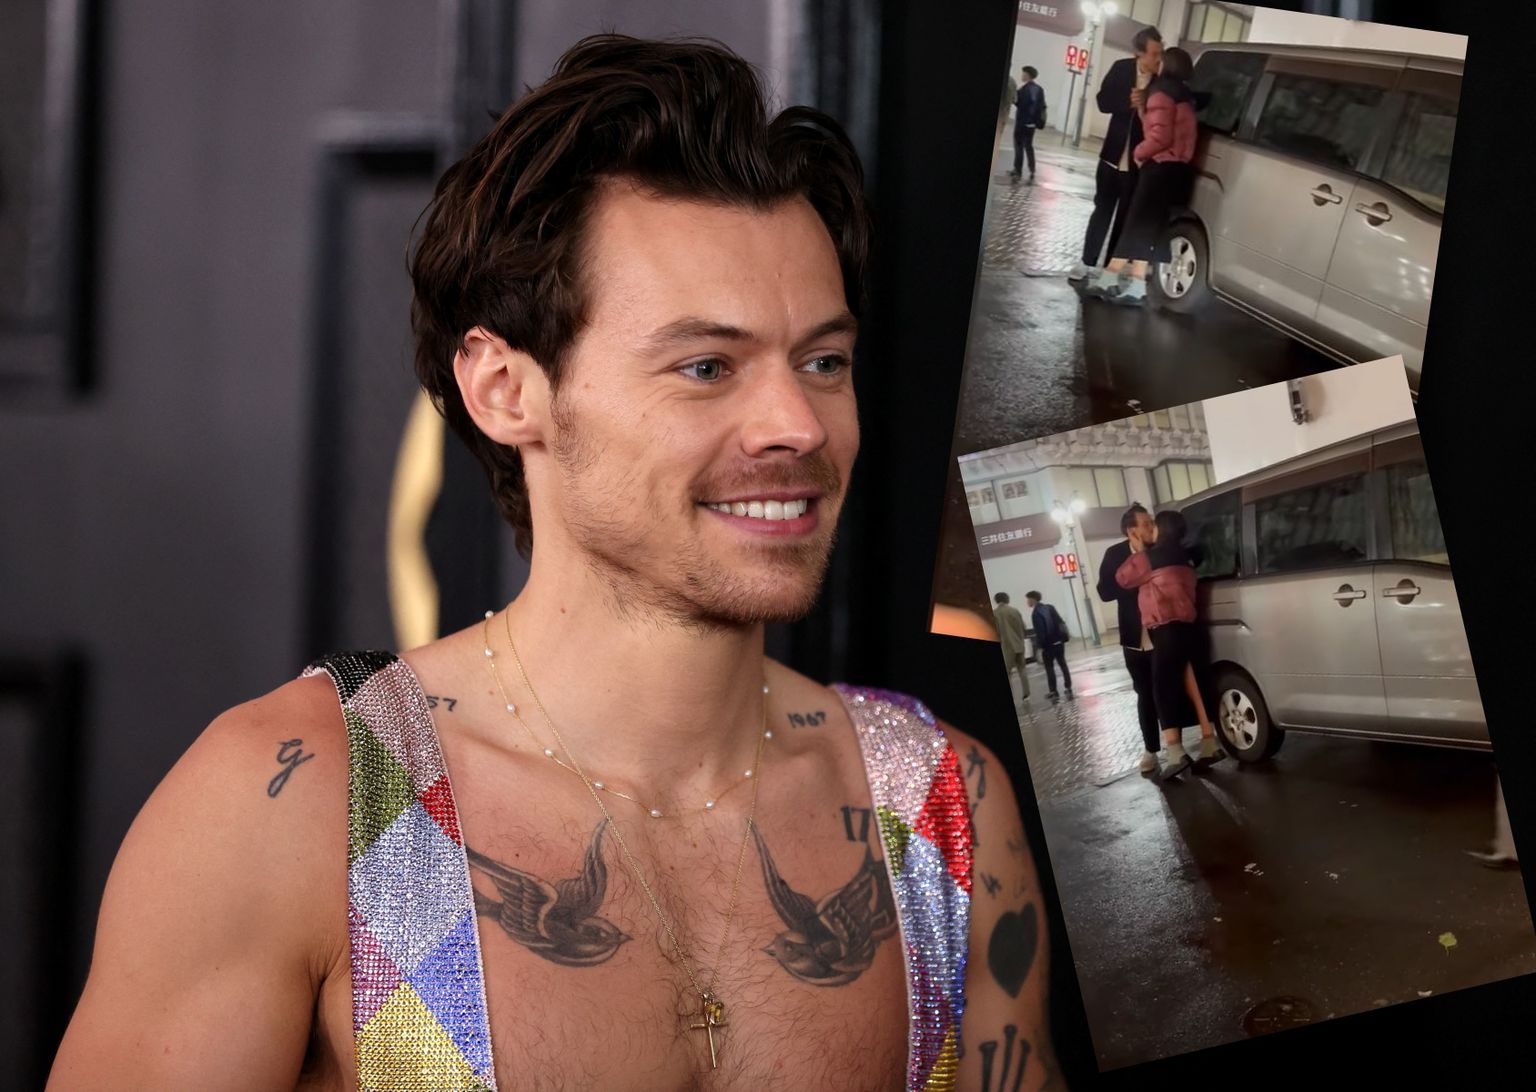 Briti laulja Harry Styles jagas modelliga Tokyo tänavatel intiimset hetke.